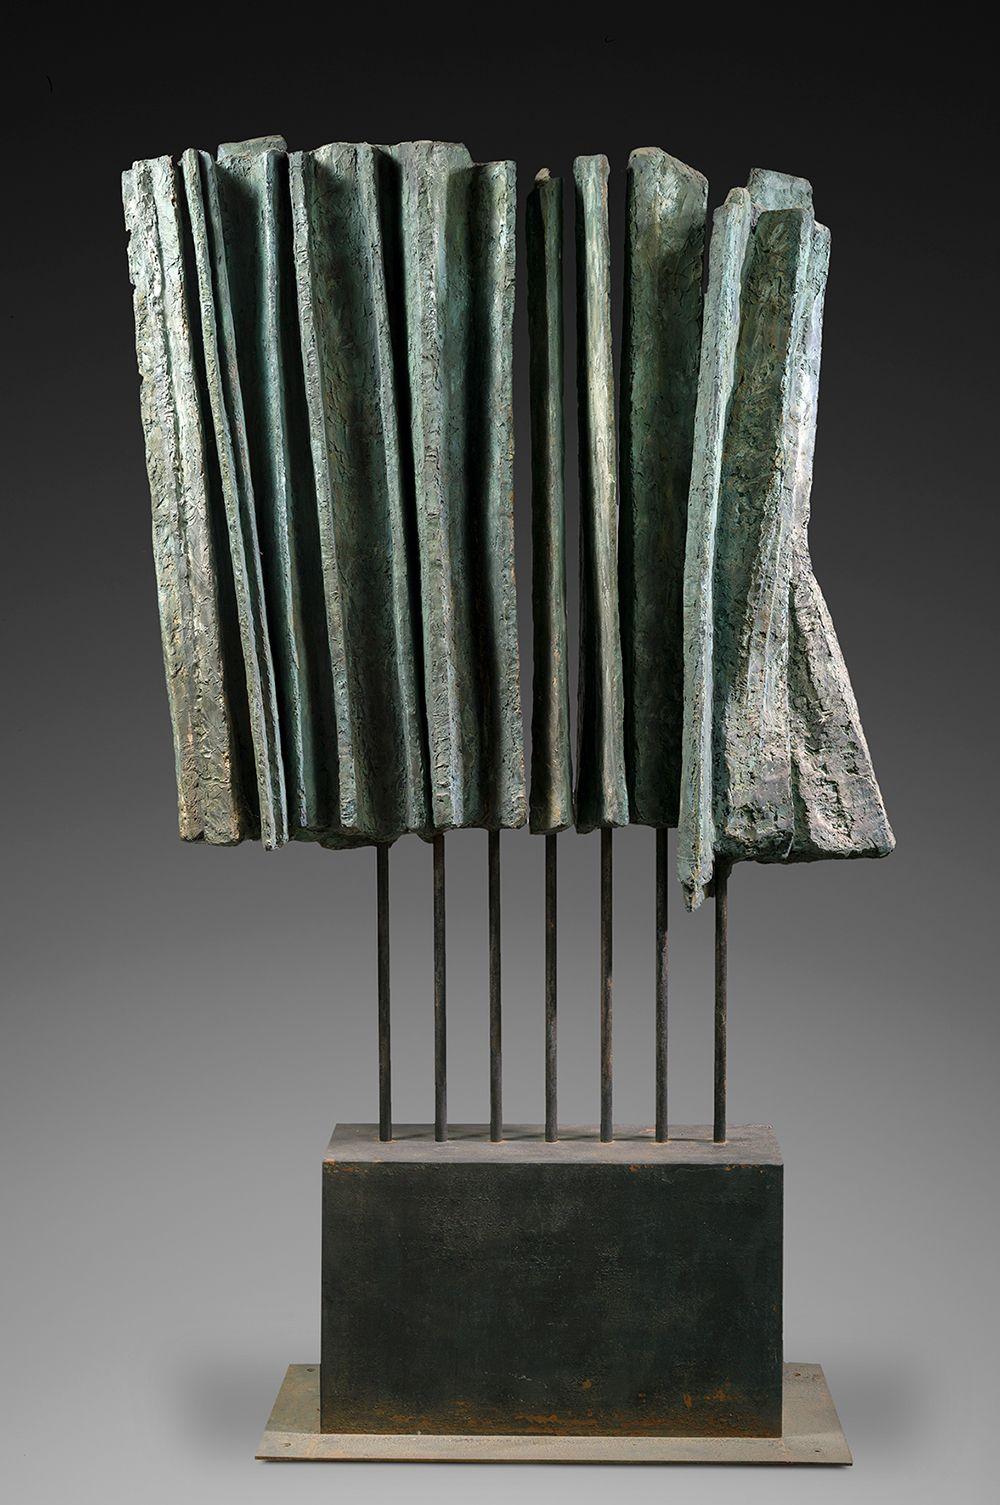 Large Vibration est une sculpture en bronze de l'artiste contemporaine Martine Demal, dont les dimensions, socle compris, sont de 206 × 103 × 45 cm (81,1 × 40,6 × 17,7 in). 
La sculpture est signée et numérotée, elle fait partie d'une édition